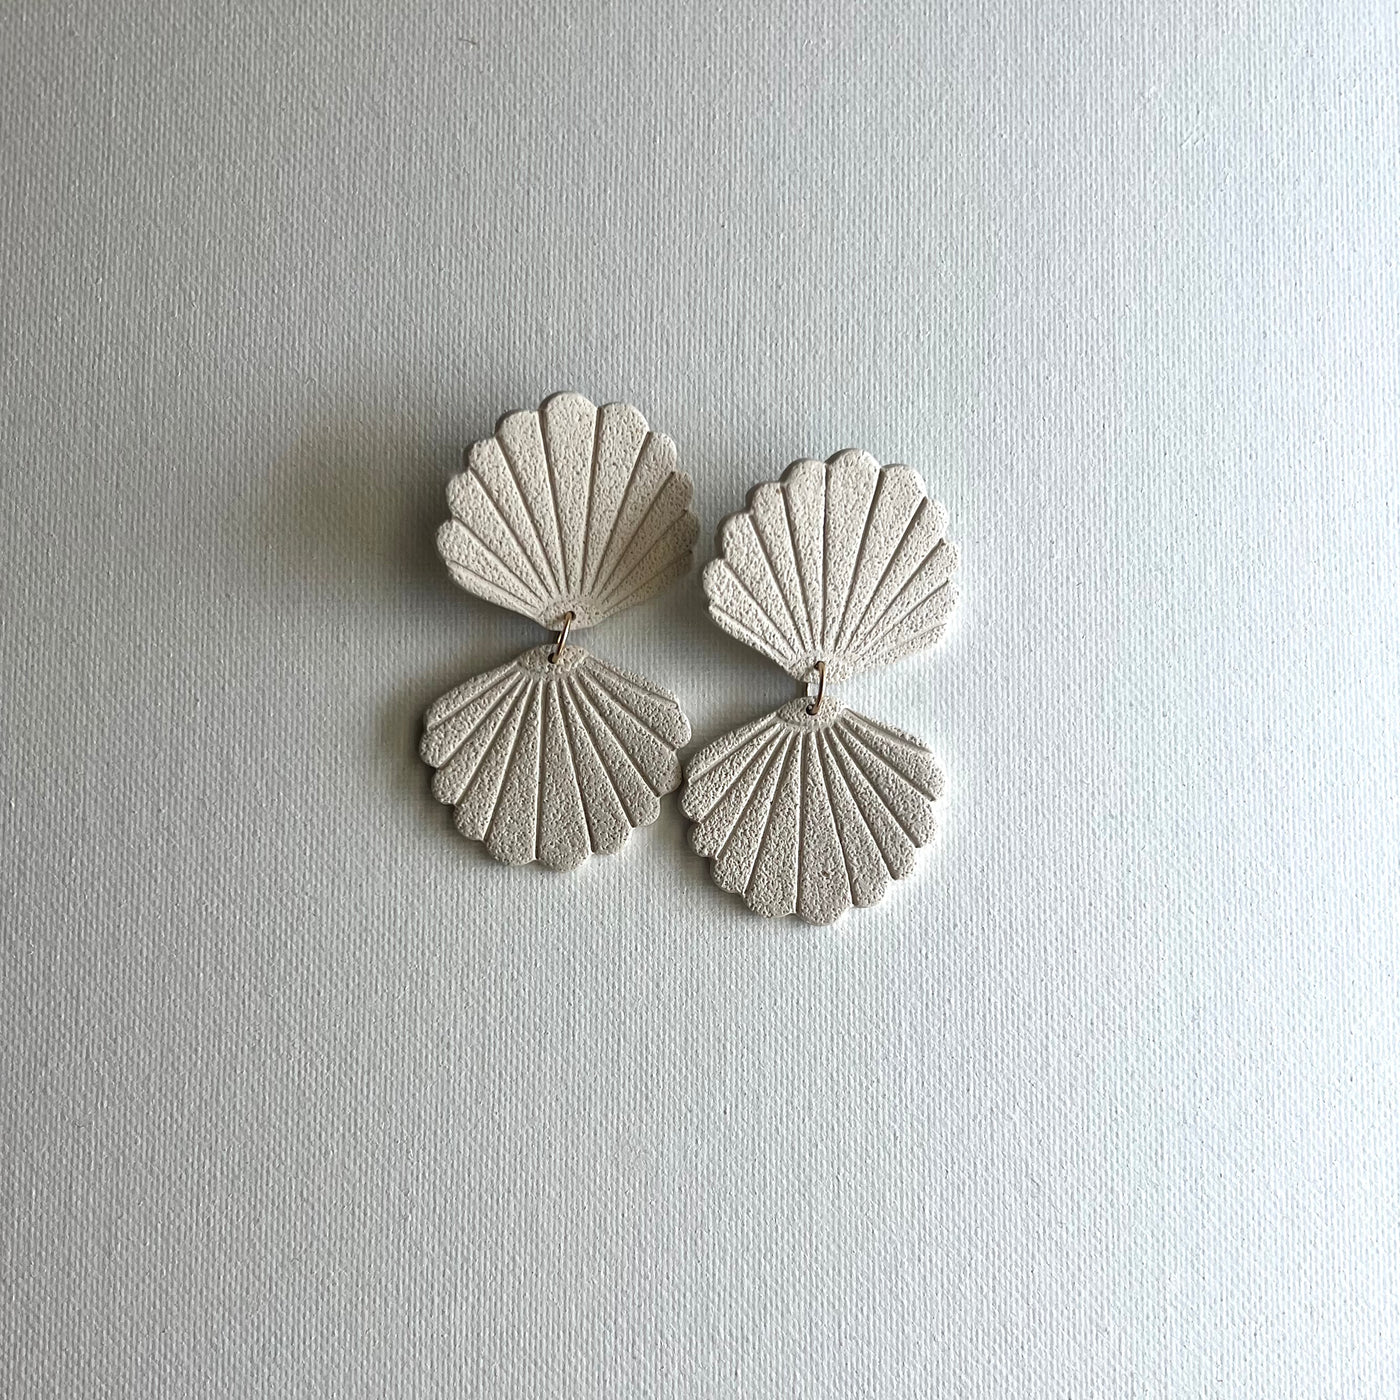 Seashell dangles